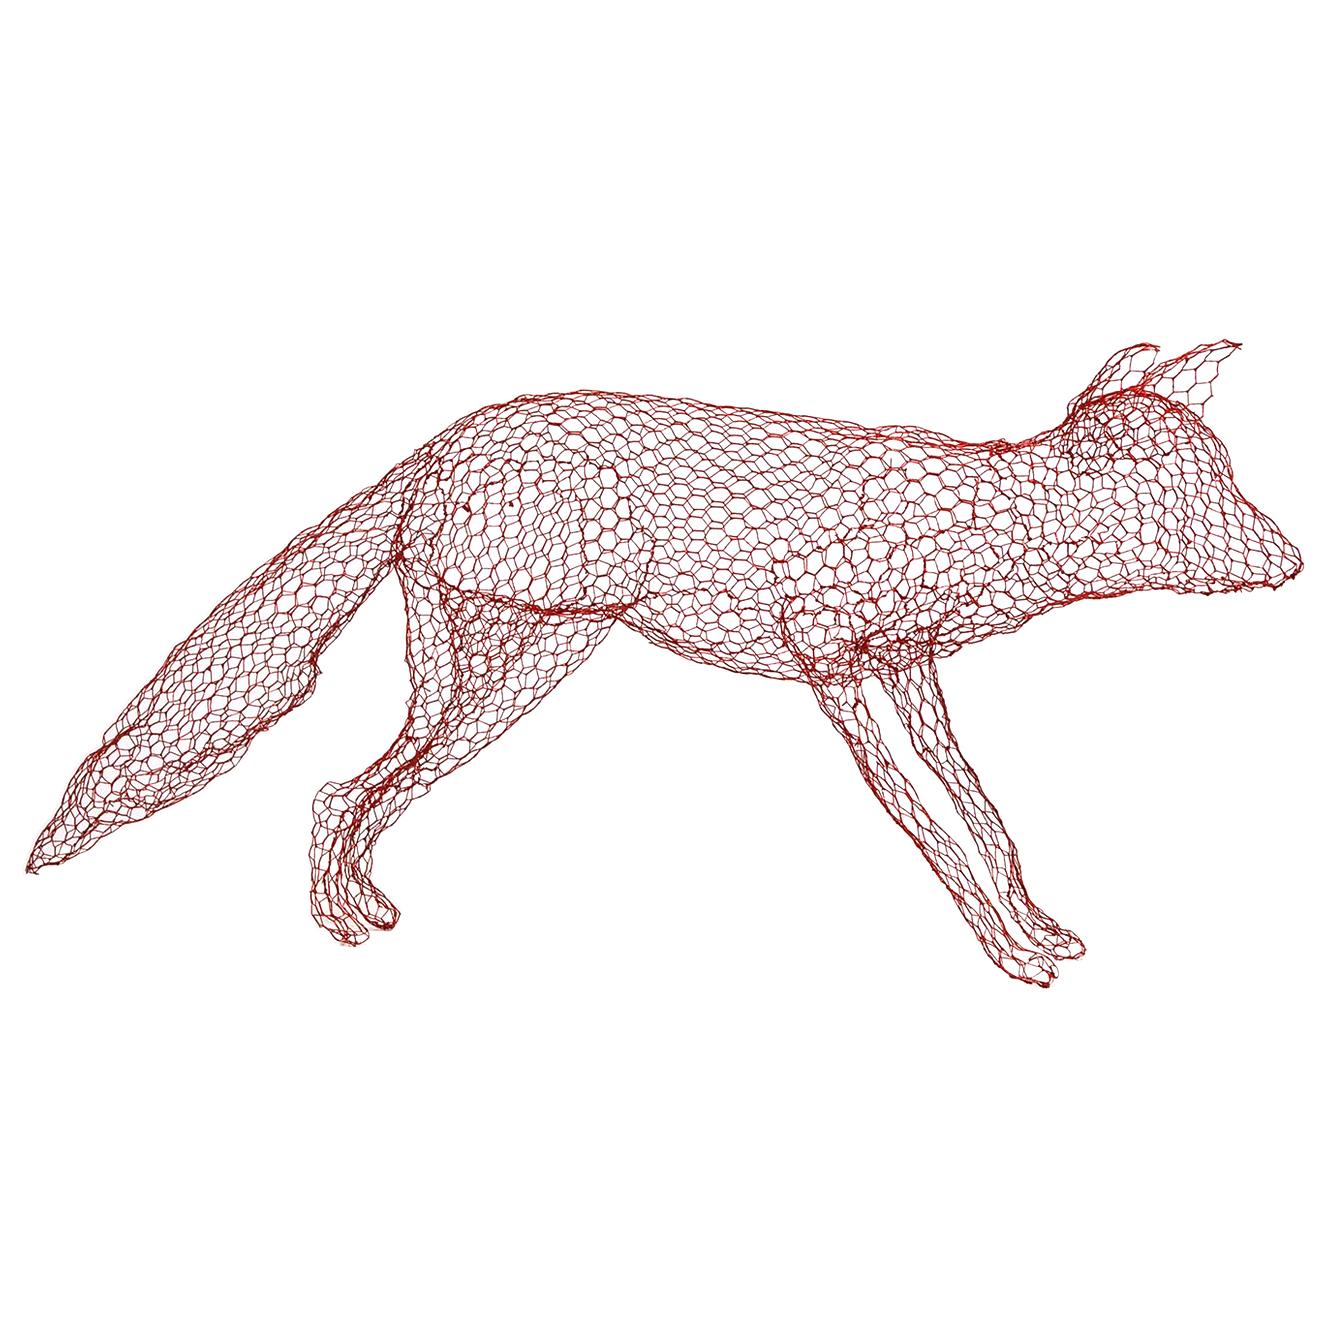 Red Fox in Wire Mesh by Benedetta Mori Ubaldini